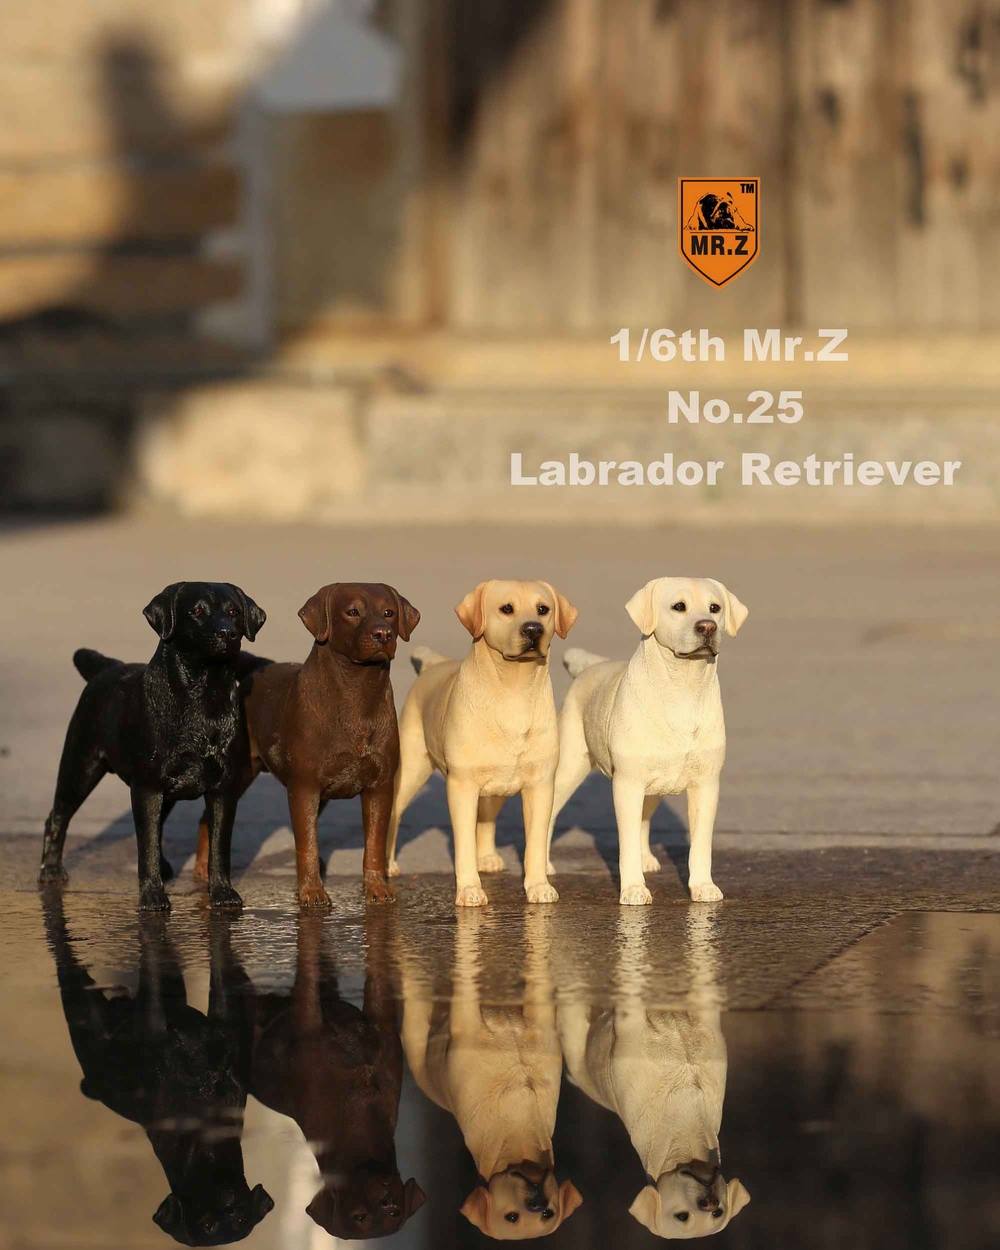 Mr. Z - Real Animal Series No. 25 - Labrador Retriever 002 (1/6 Scale)